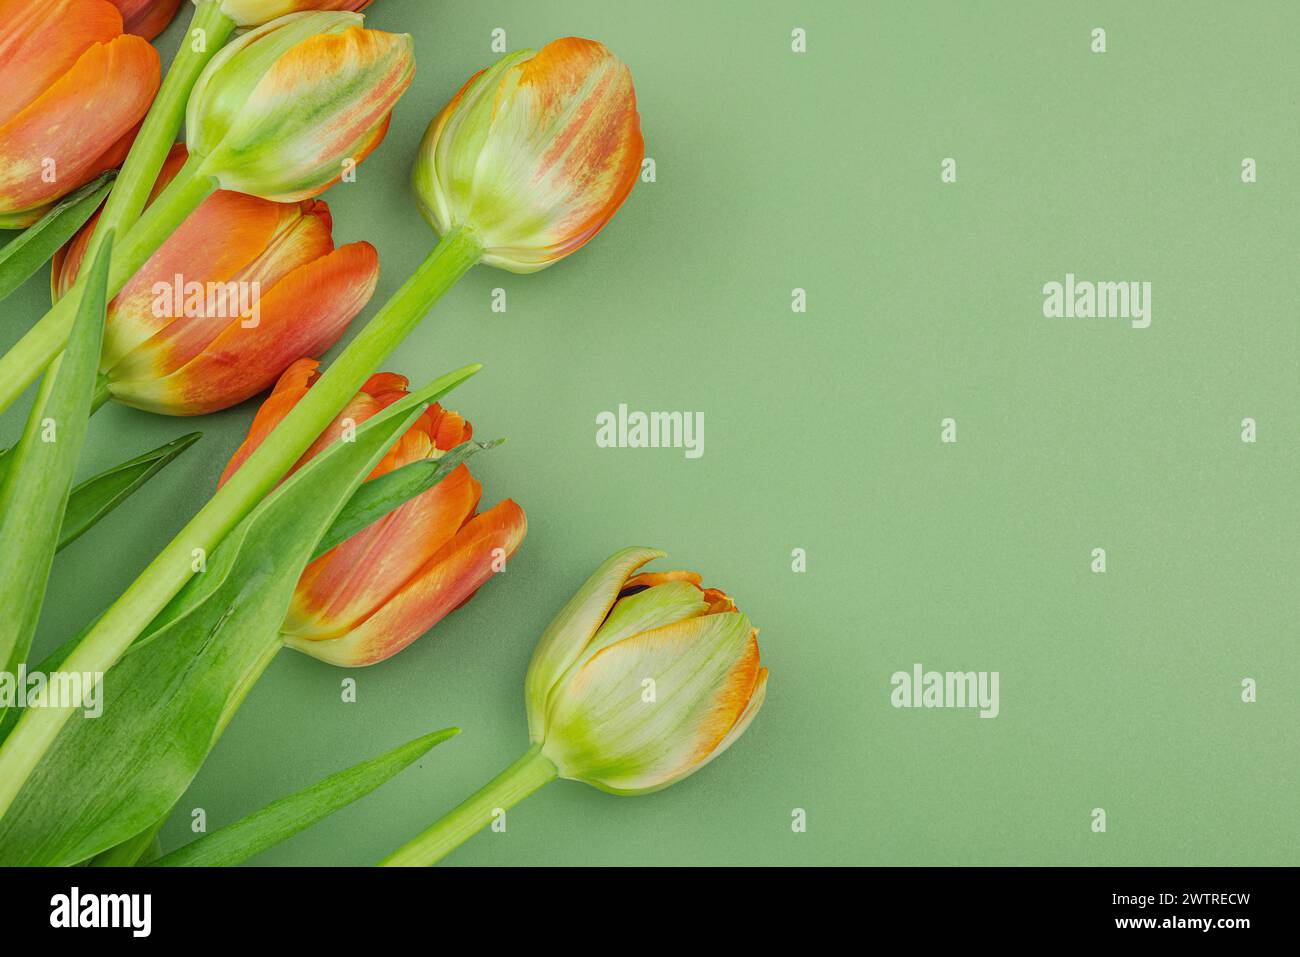 Leuchtend orange Tulpen auf pastellgrünem Hintergrund. Festliches Konzept für Muttertag oder Valentinstag. Grußkarte, Osterliege, beste Wünsche, t Stockfoto